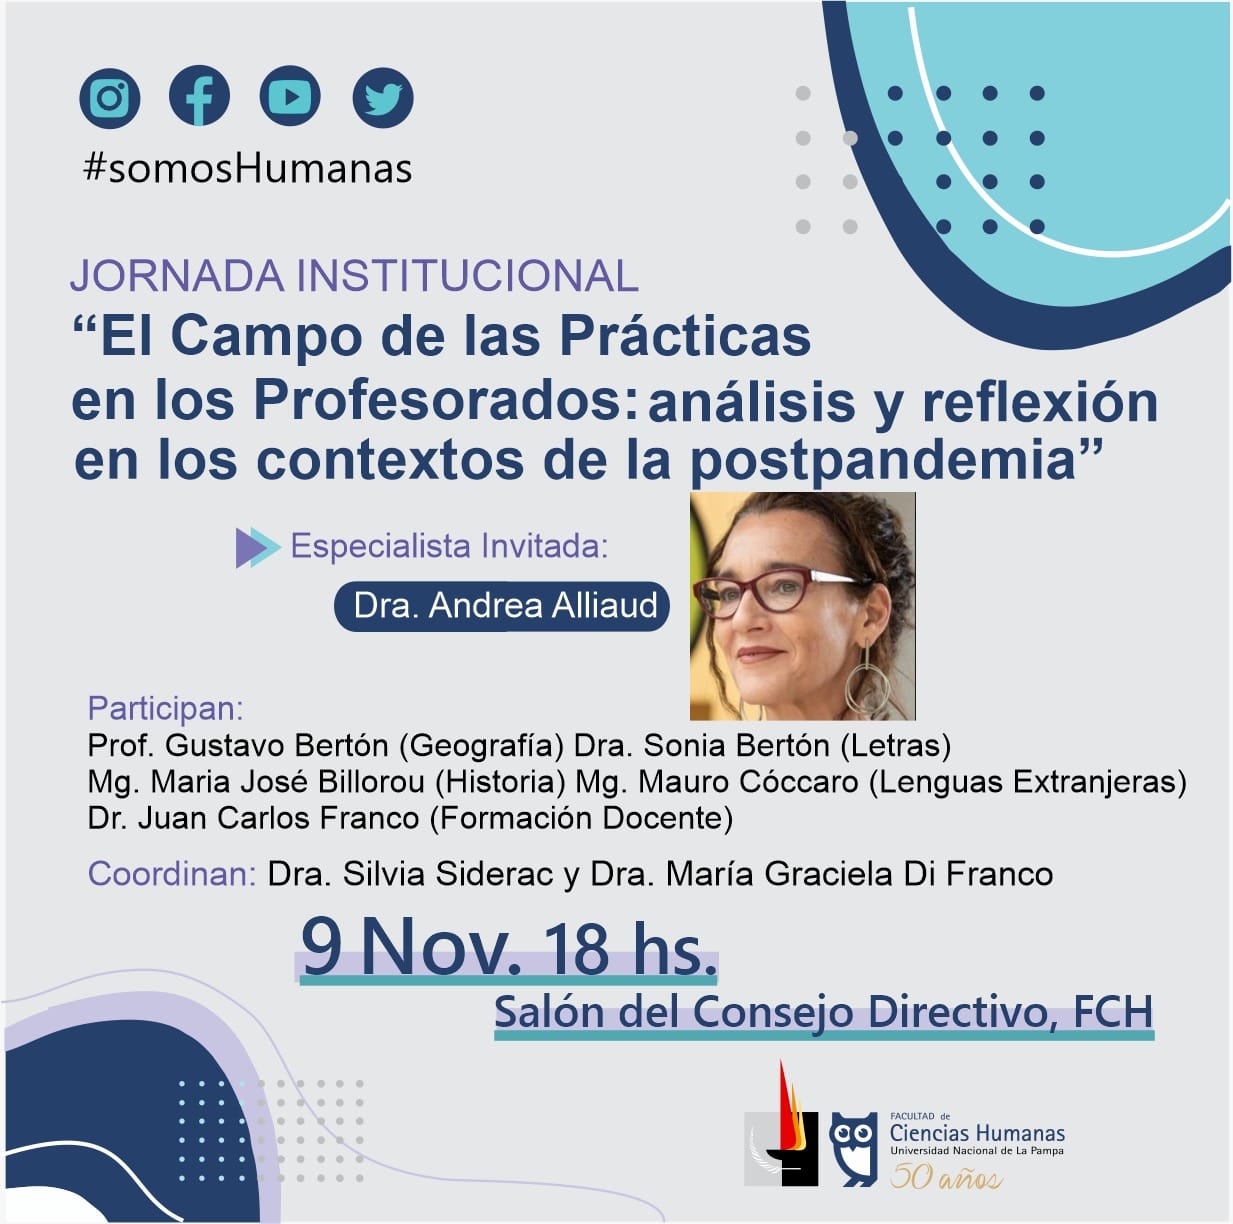 Jornadas Institucionales El Campo de las Prácticas en los Profesorados: análisis y reflexión en los contextos de la postpandemia